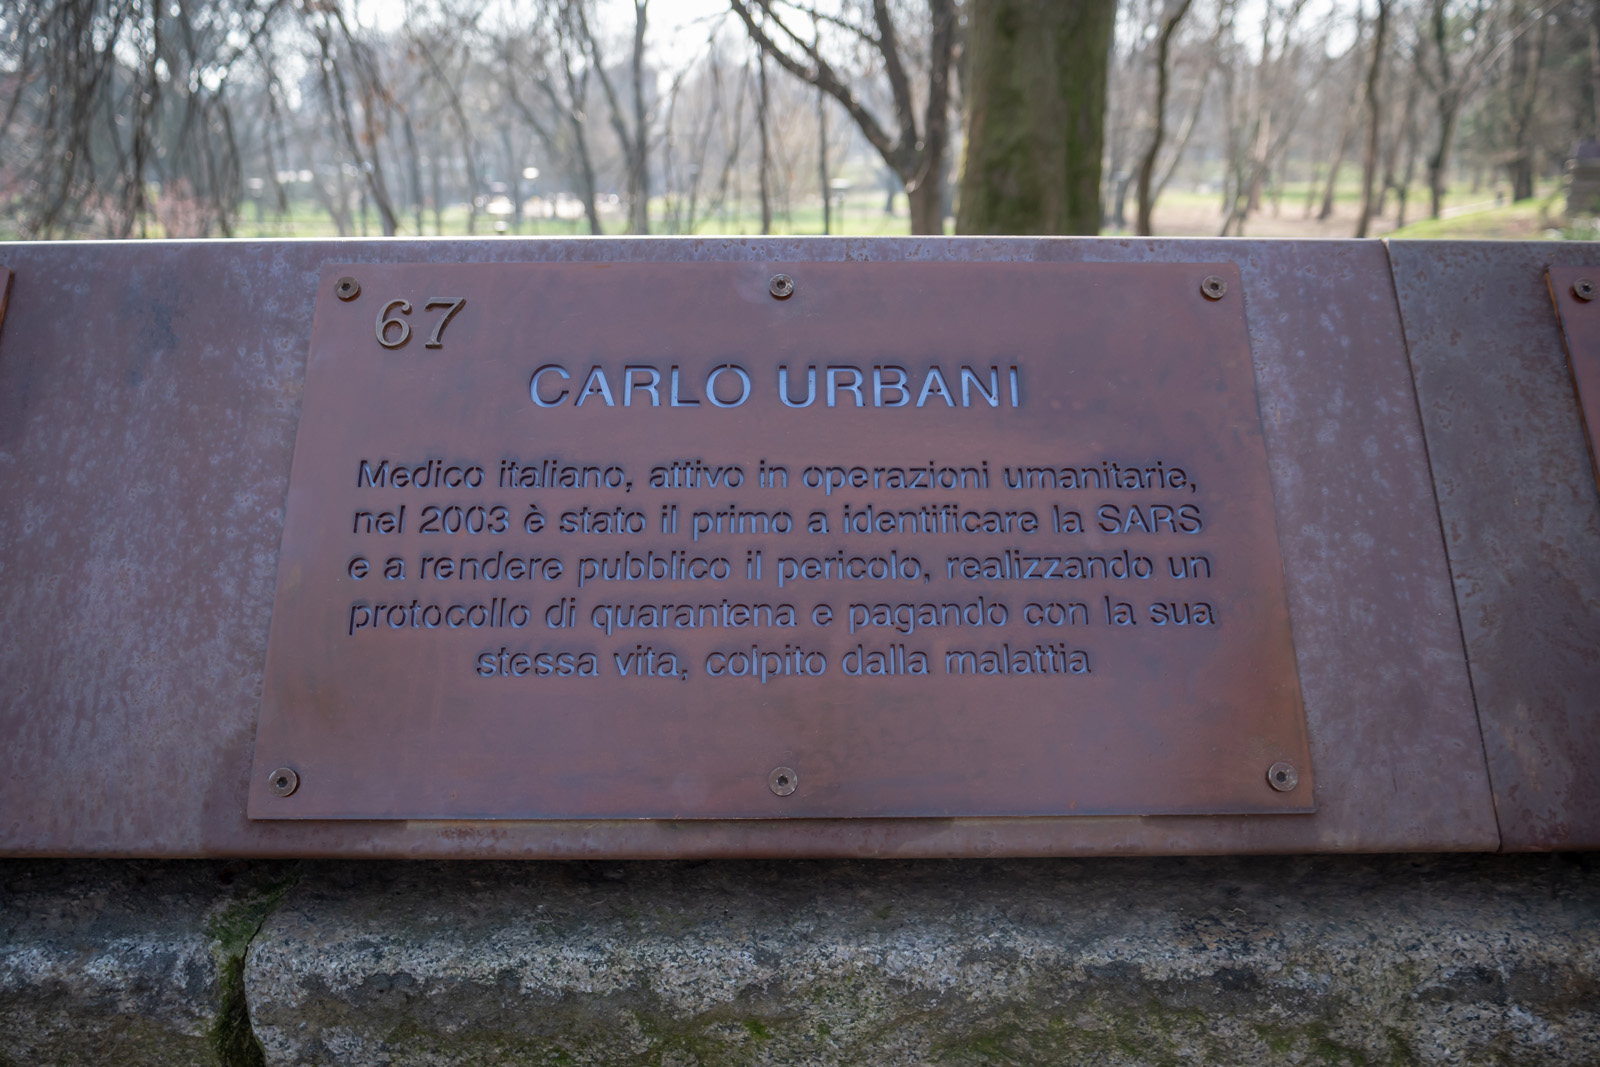 The plaque for Carlo Urbani